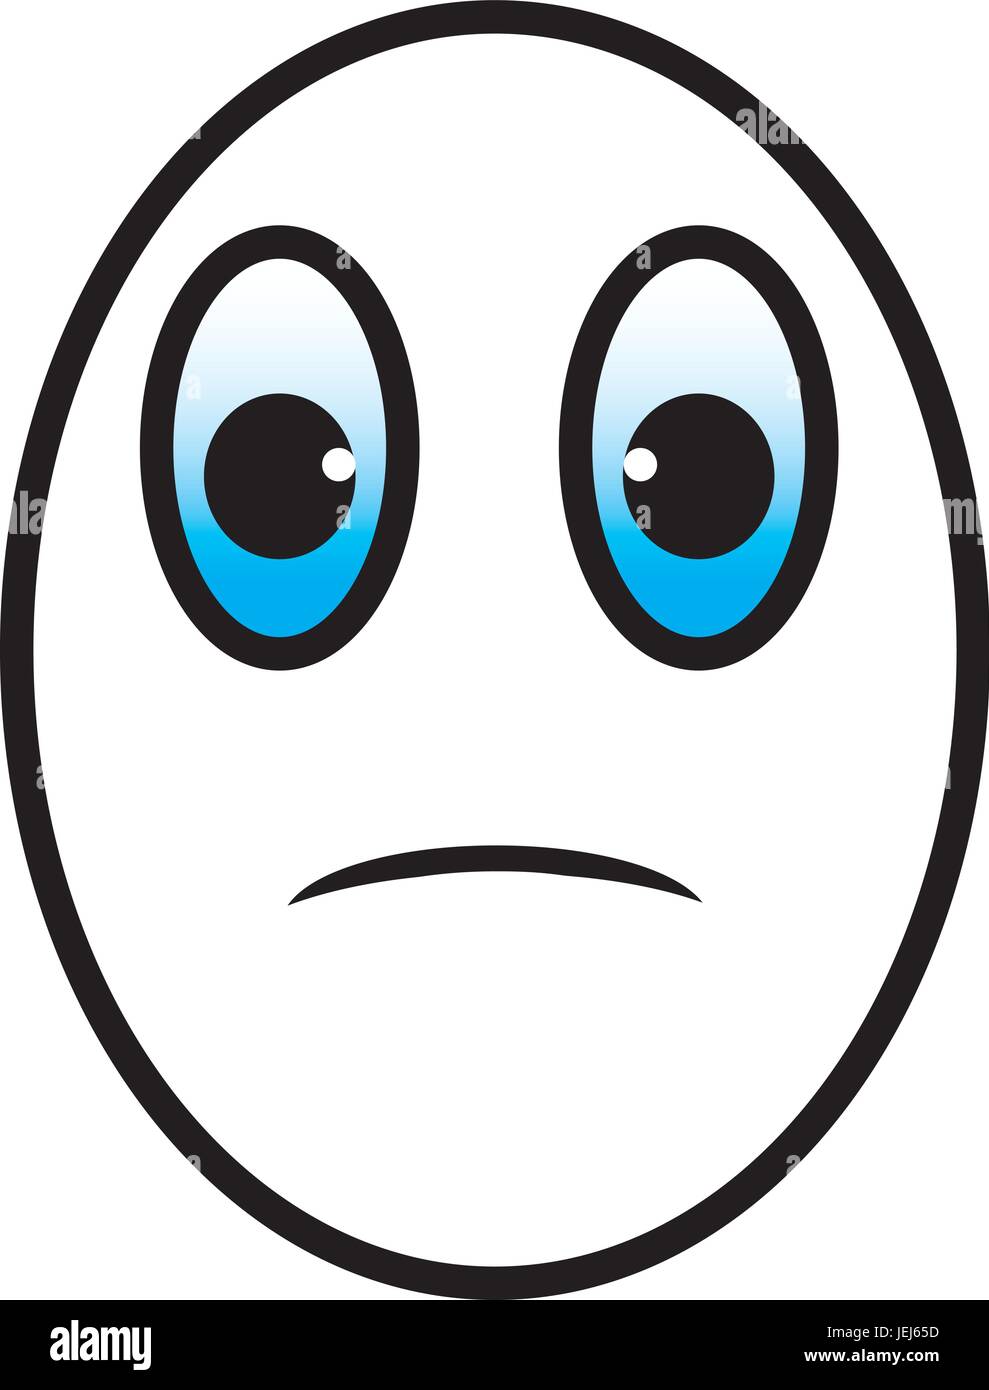 Eggman cartoon face sad with blue eyes Stock Vector